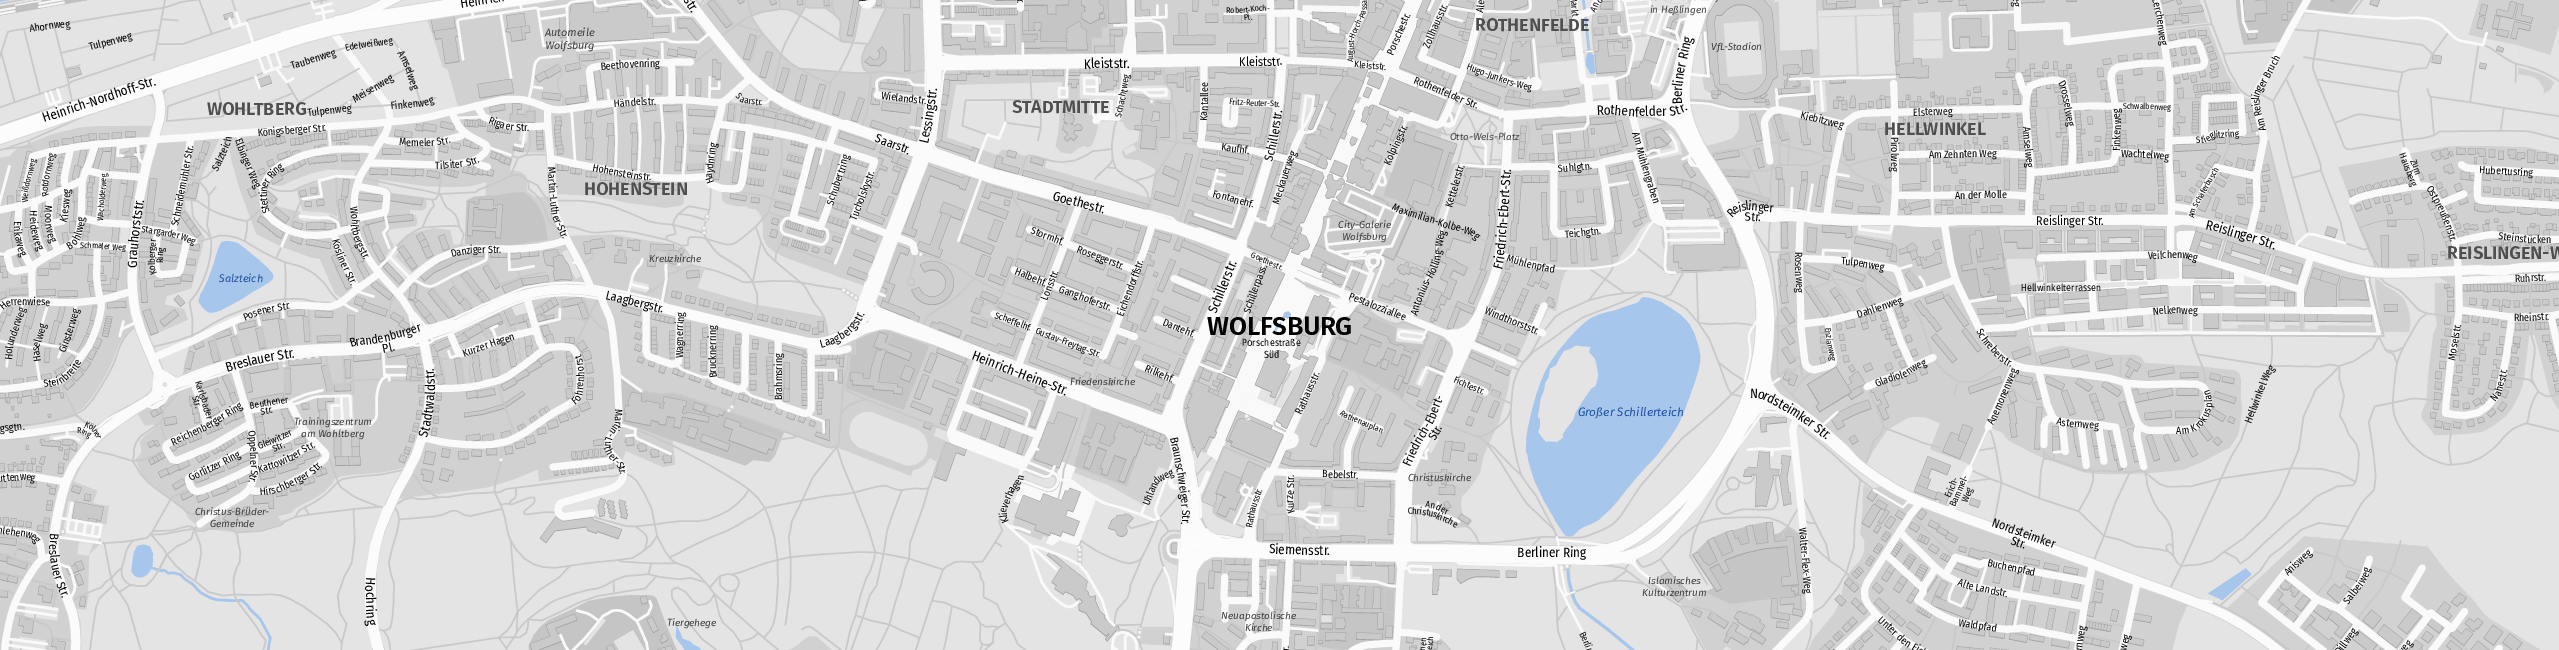 Stadtplan Wolfsburg zum Downloaden.